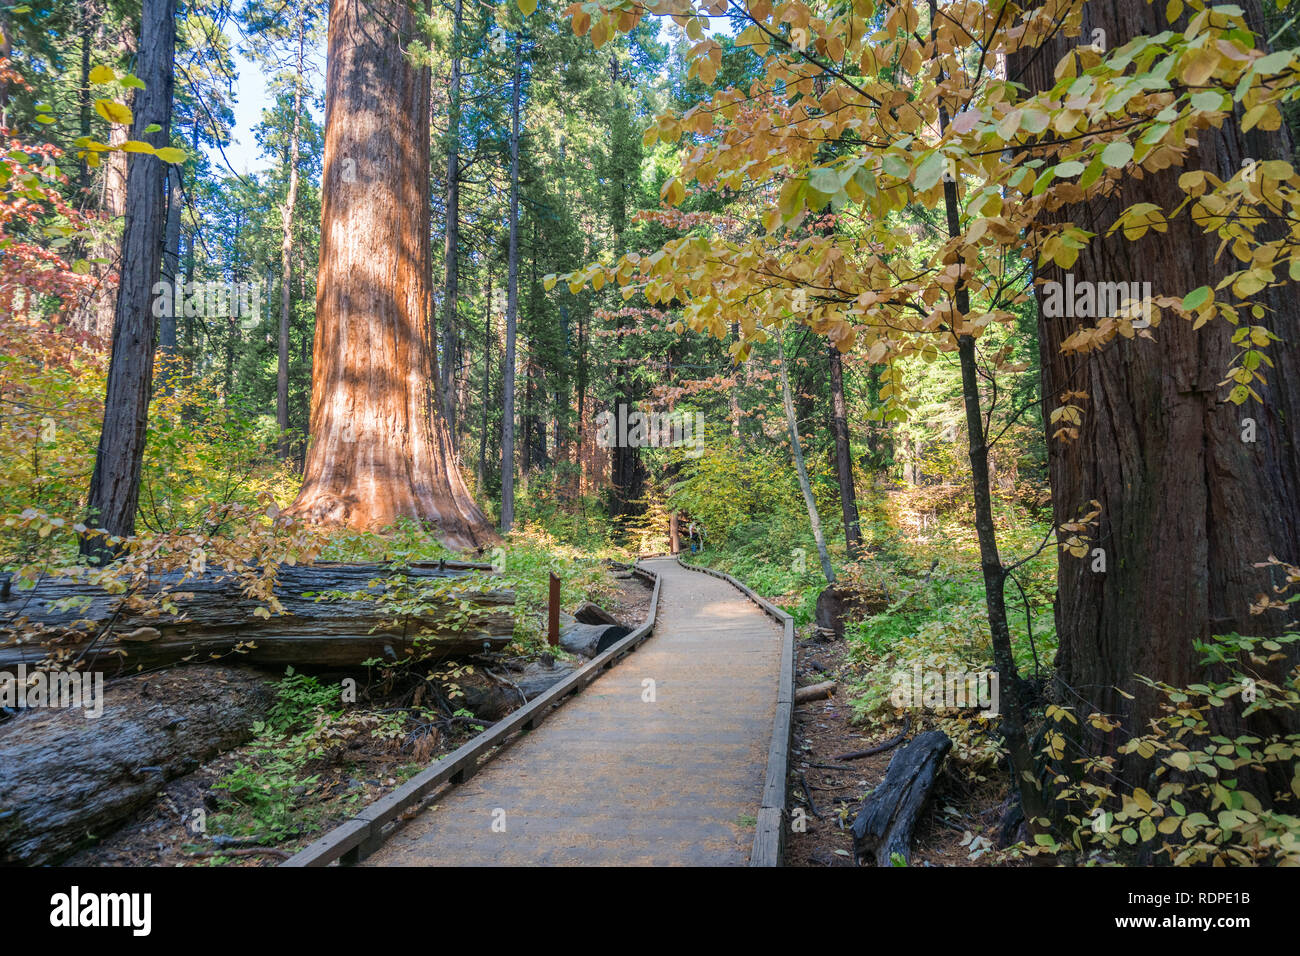 Promenade en bois au moyen d'une forêt d'arbres à feuilles persistantes, parc d'État Calaveras Big Trees, Californie Banque D'Images